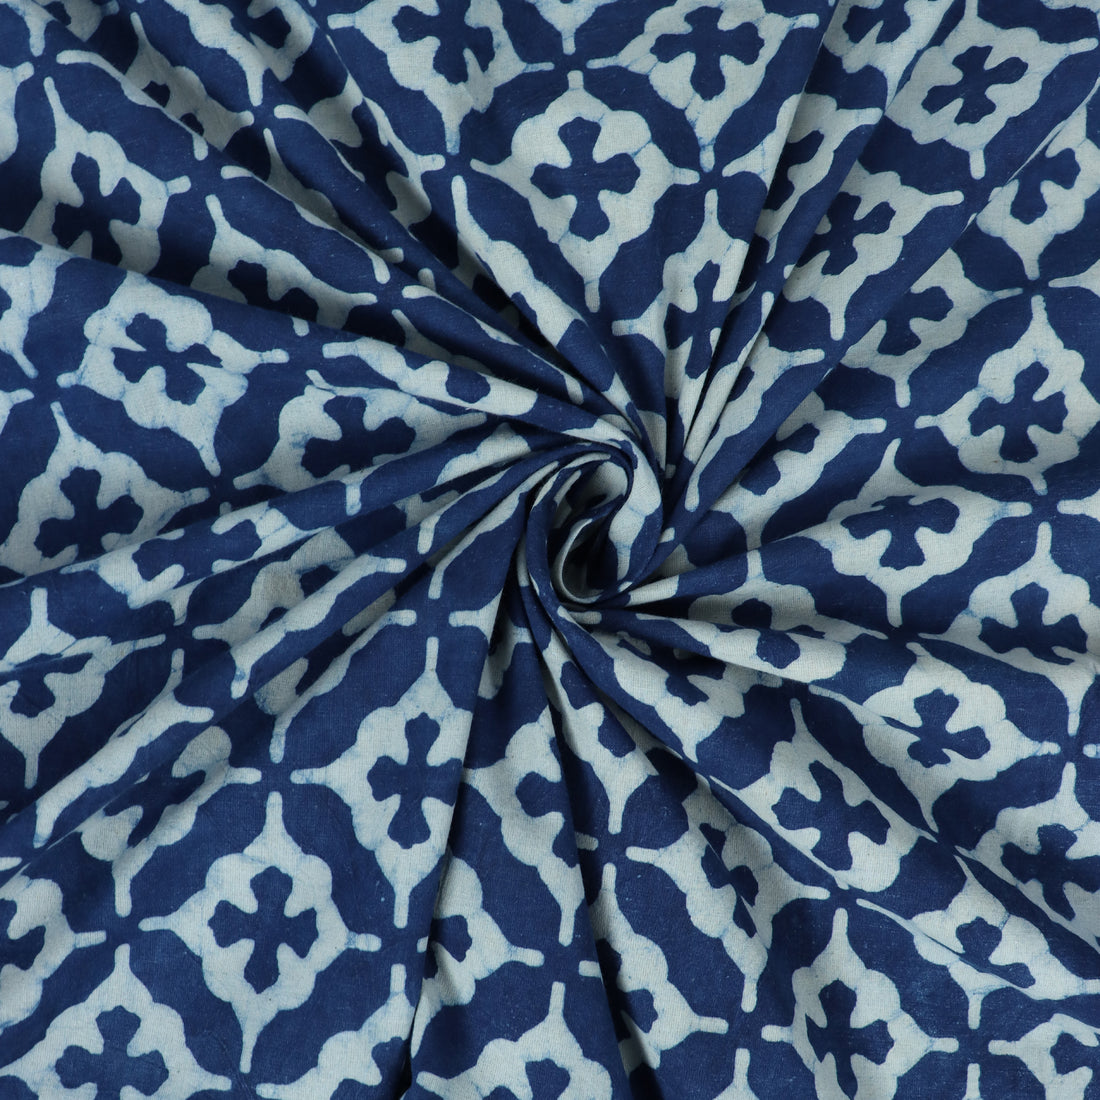 Star Print Indigo Cotton Fabric For Dress